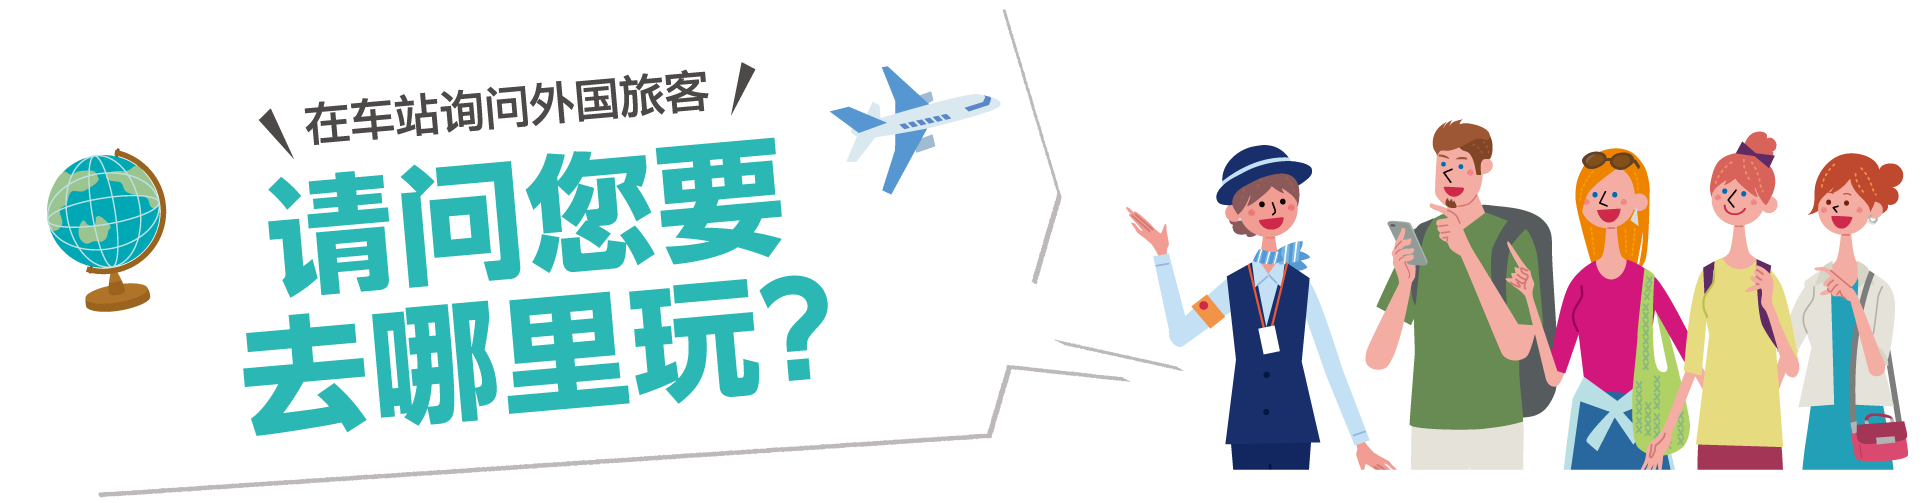 在车站询问外国旅客 请问您要 去哪里玩? 访问车站内的外国旅客！“您要搭乘阪神电车去哪里?”